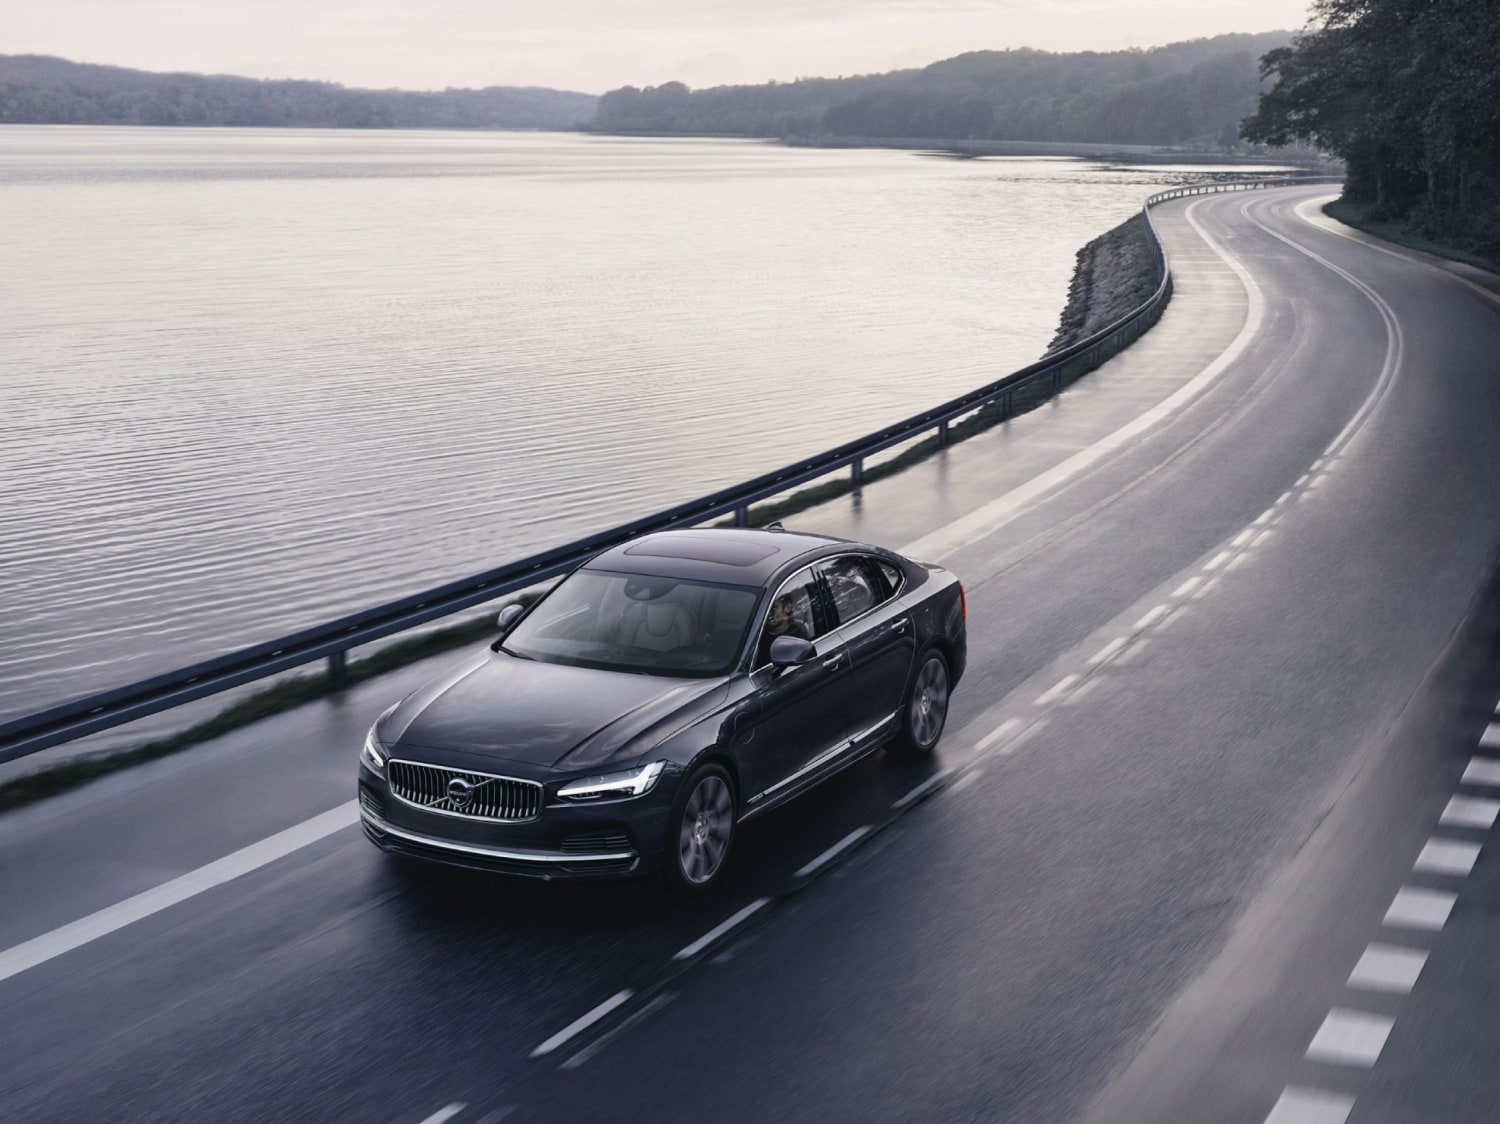 Автомобиль Volvo едет по дороге, граничащей с озером.